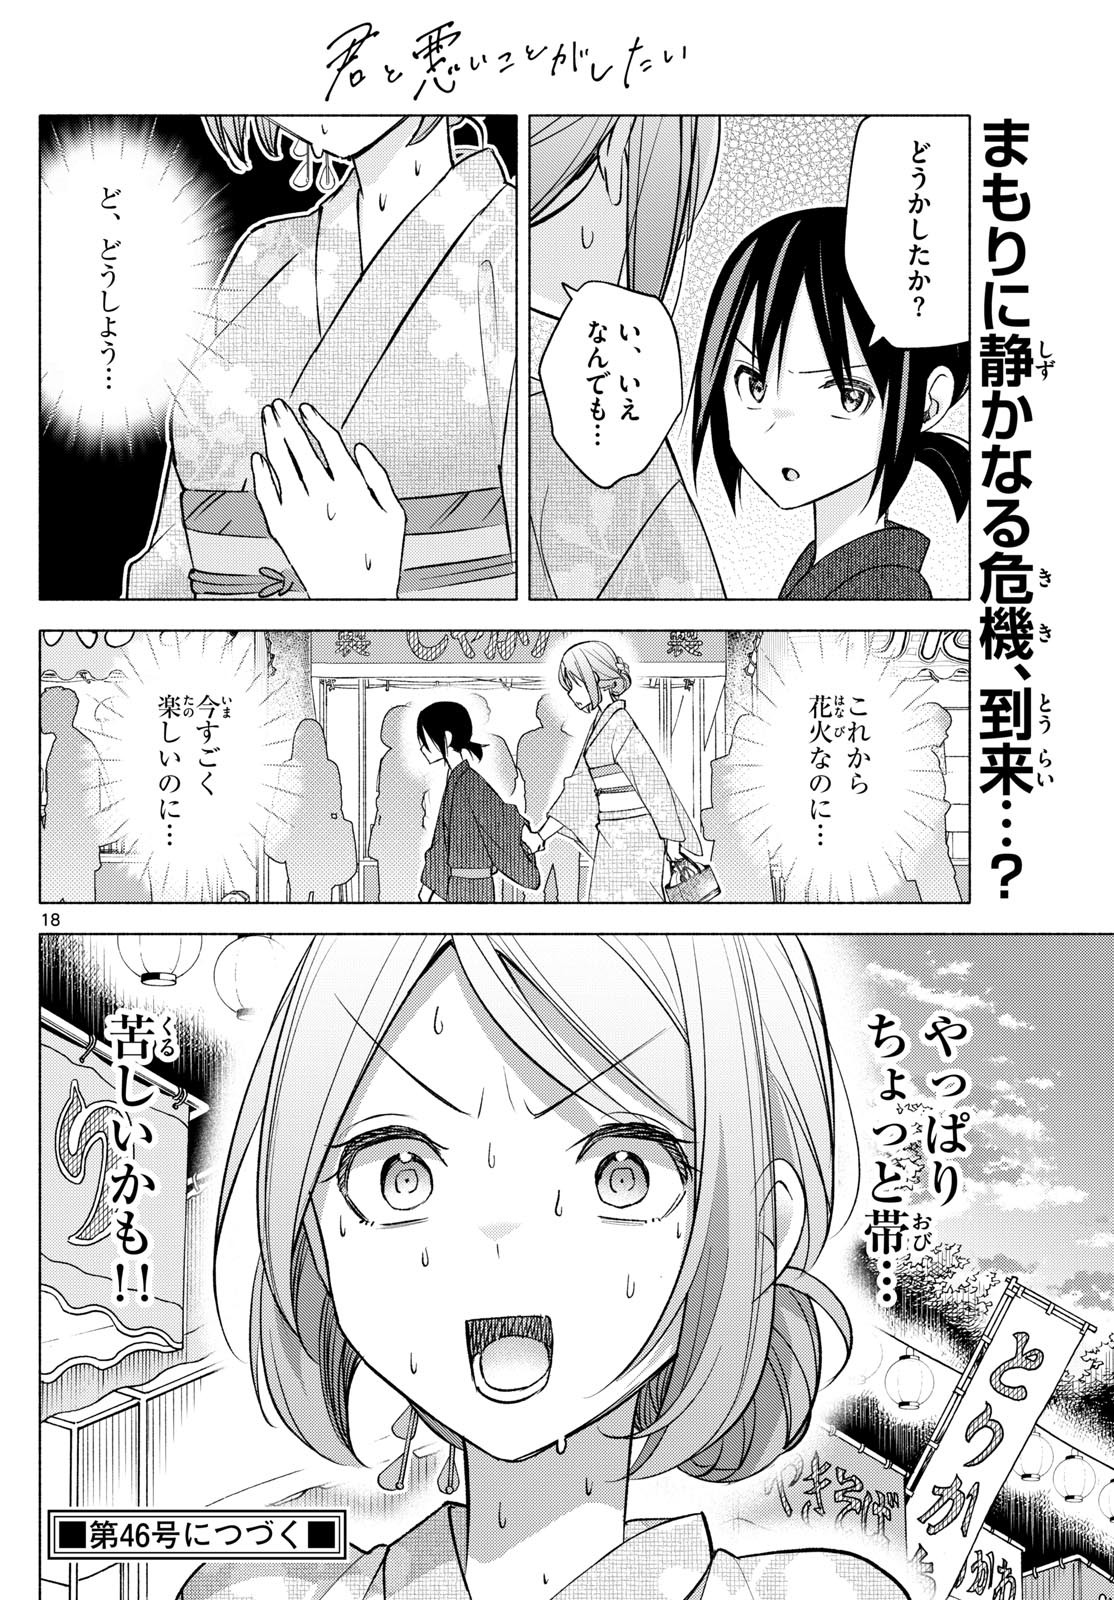 Kimi to Warui Koto ga Shitai - Chapter 046 - Page 18